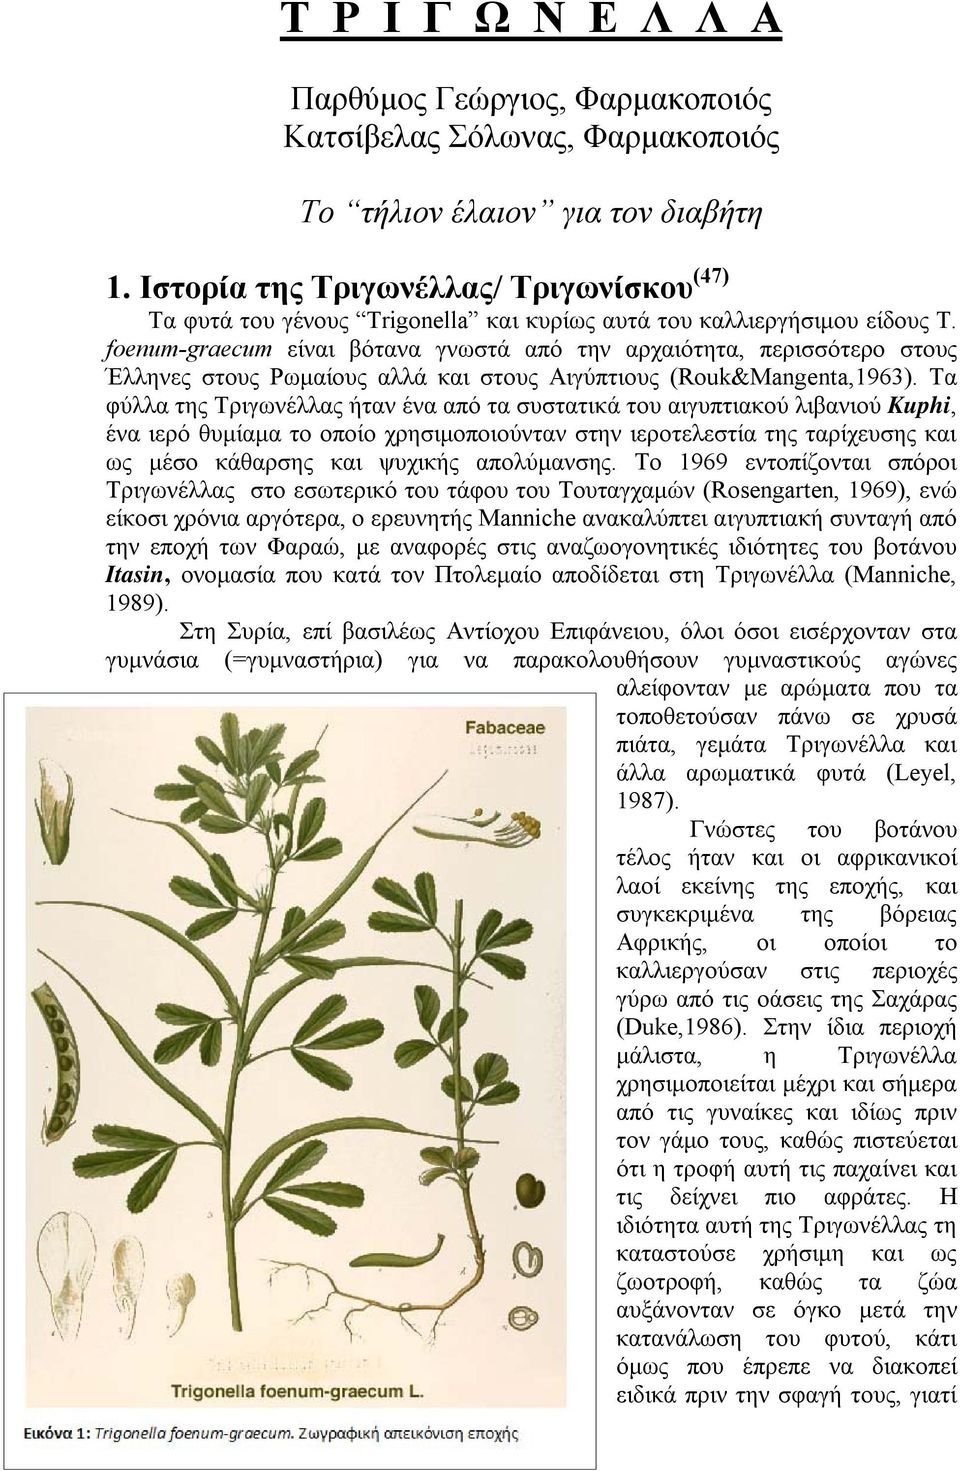 foenum-graecum είναι βότανα γνωστά από την αρχαιότητα, περισσότερο στους Έλληνες στους Ρωμαίους αλλά και στους Αιγύπτιους (Rouk&Mangenta,1963).